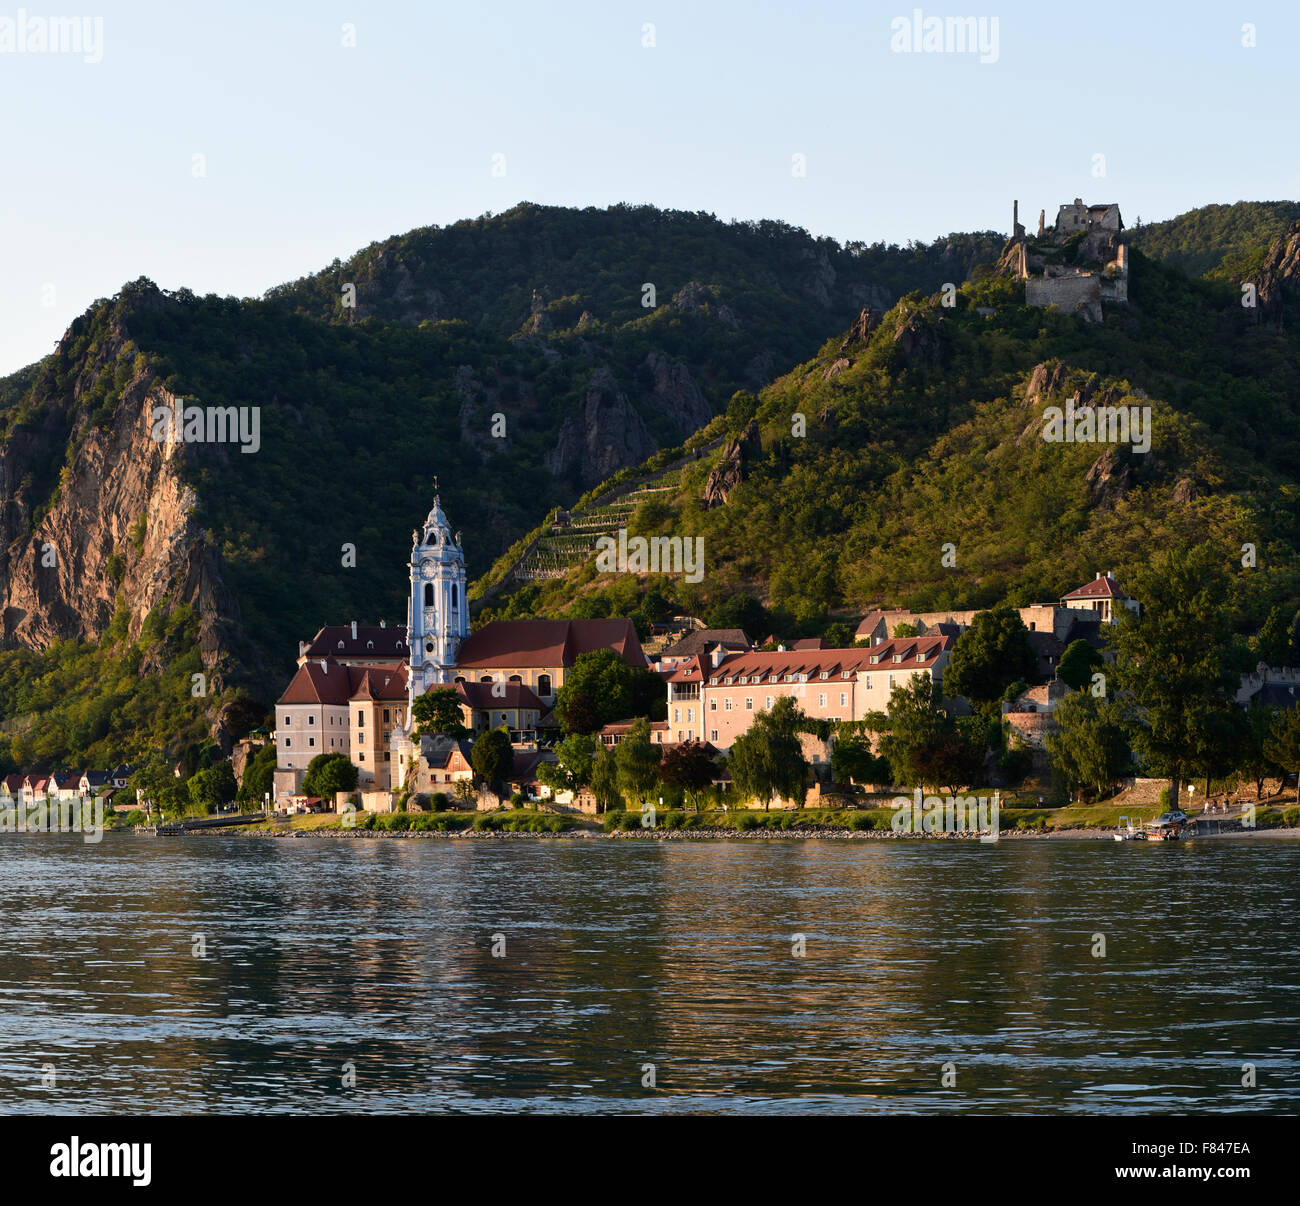 river Danube, Duernstein, Wachau, Lower Austria, Austria Stock Photo